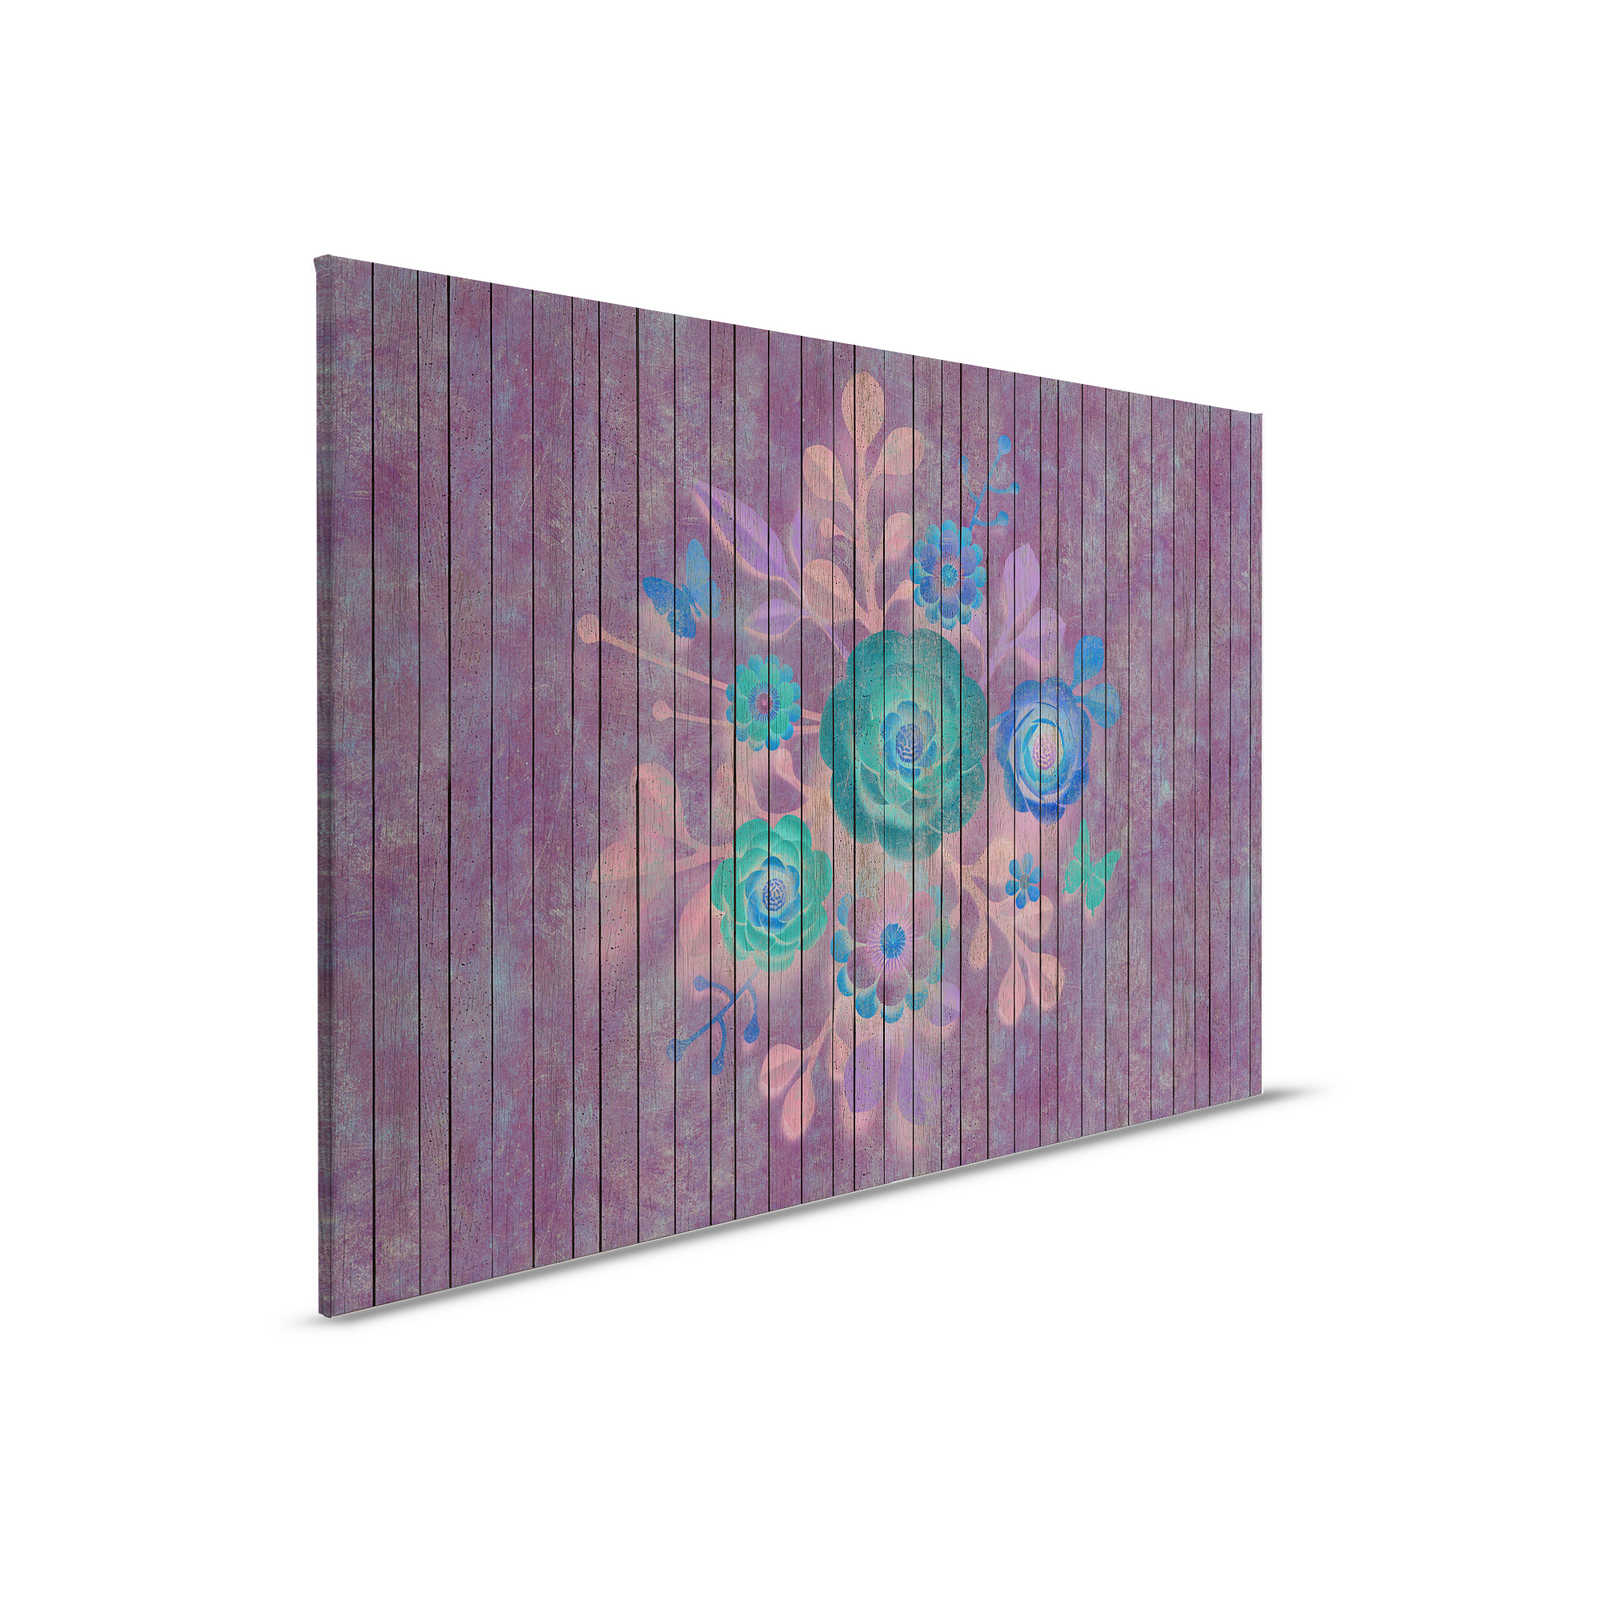 Spray Bouquet 1 - Leinwandbild mit Blumen auf Bretterwand - Holpaneele breit – 0,90 m x 0,60 m
